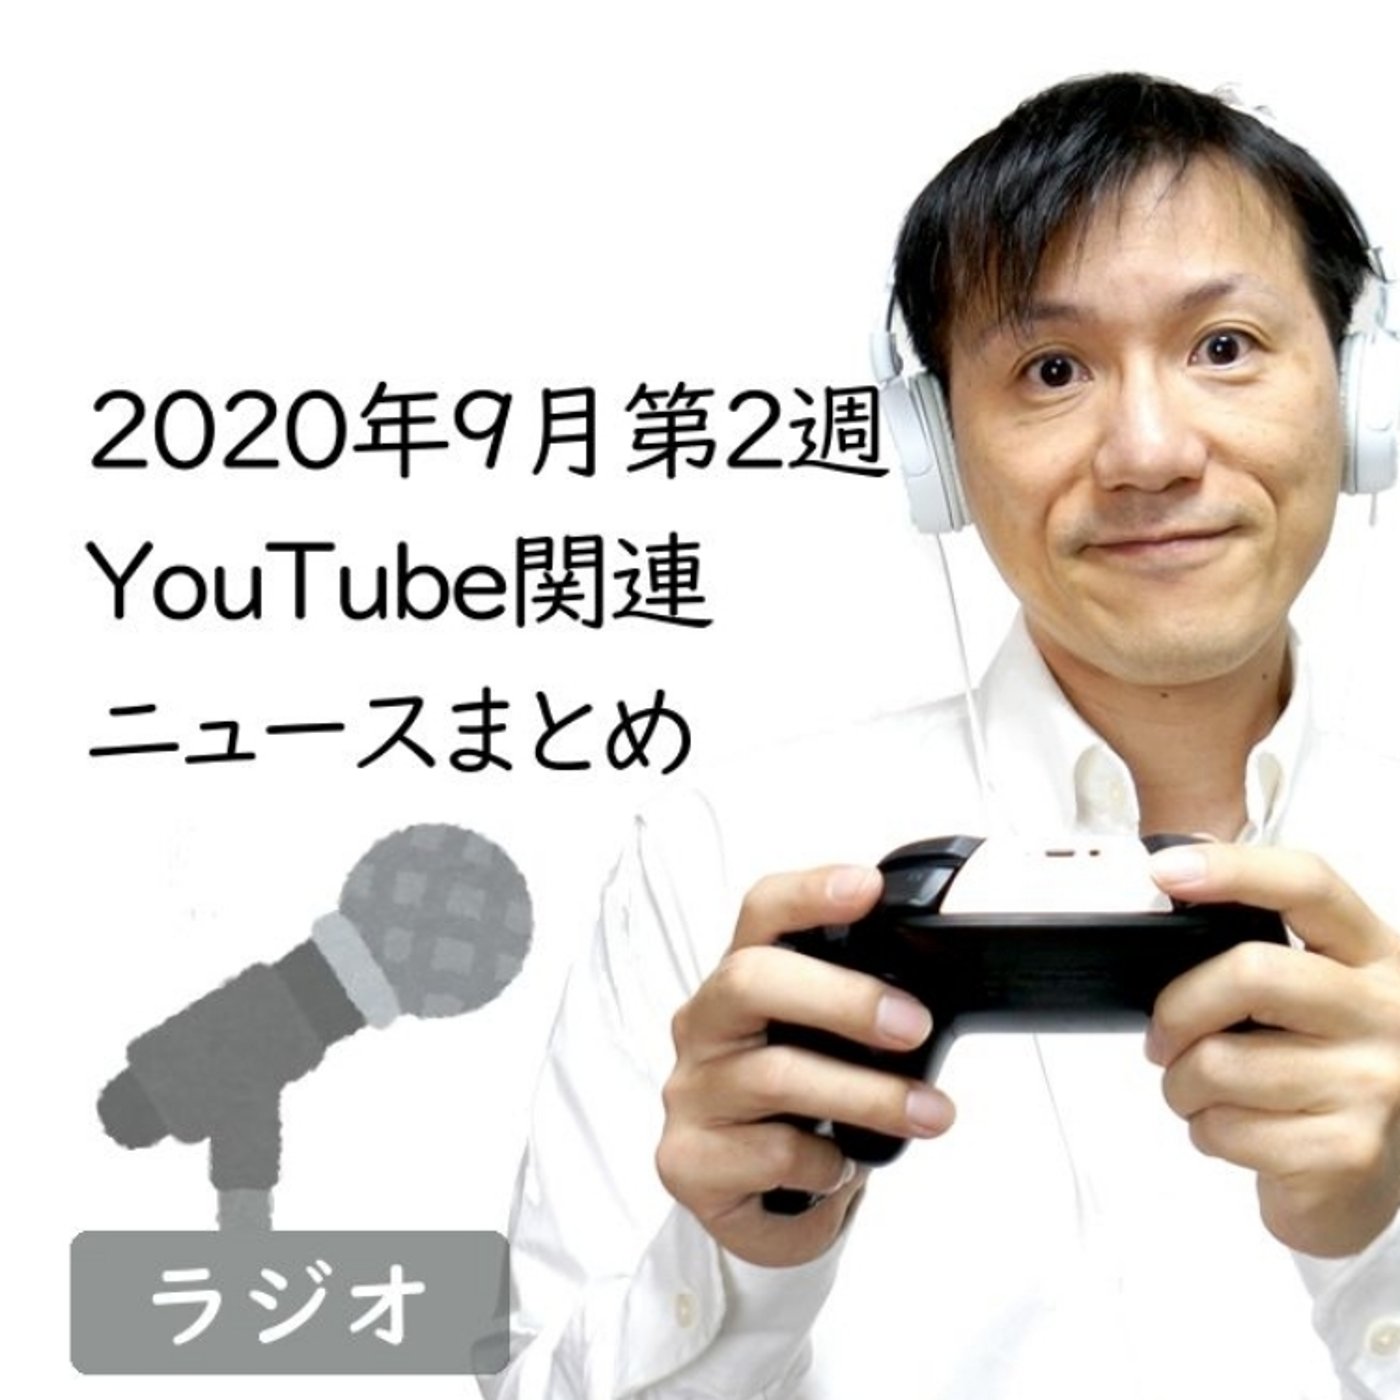 【#197】2020年9月第2週YouTube関連ニュースまとめ～ディズニー